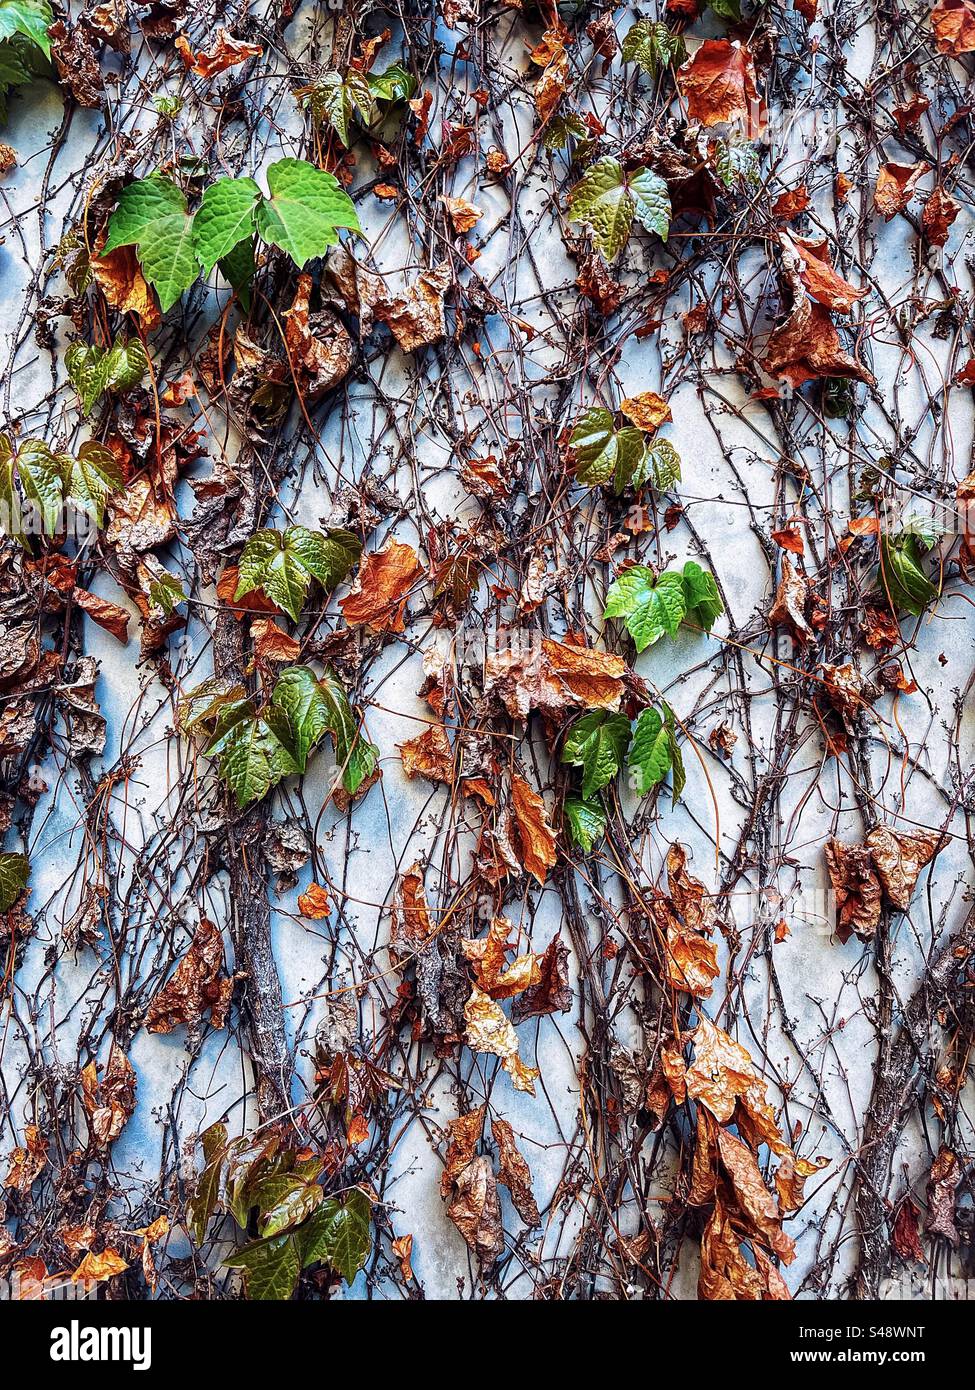 Gros plan de feuilles fraîches de lierre vert poussant à partir de tiges desséchées sèches sur un mur de béton blanc au printemps. Arrière-plans abstraits plein cadre. Banque D'Images